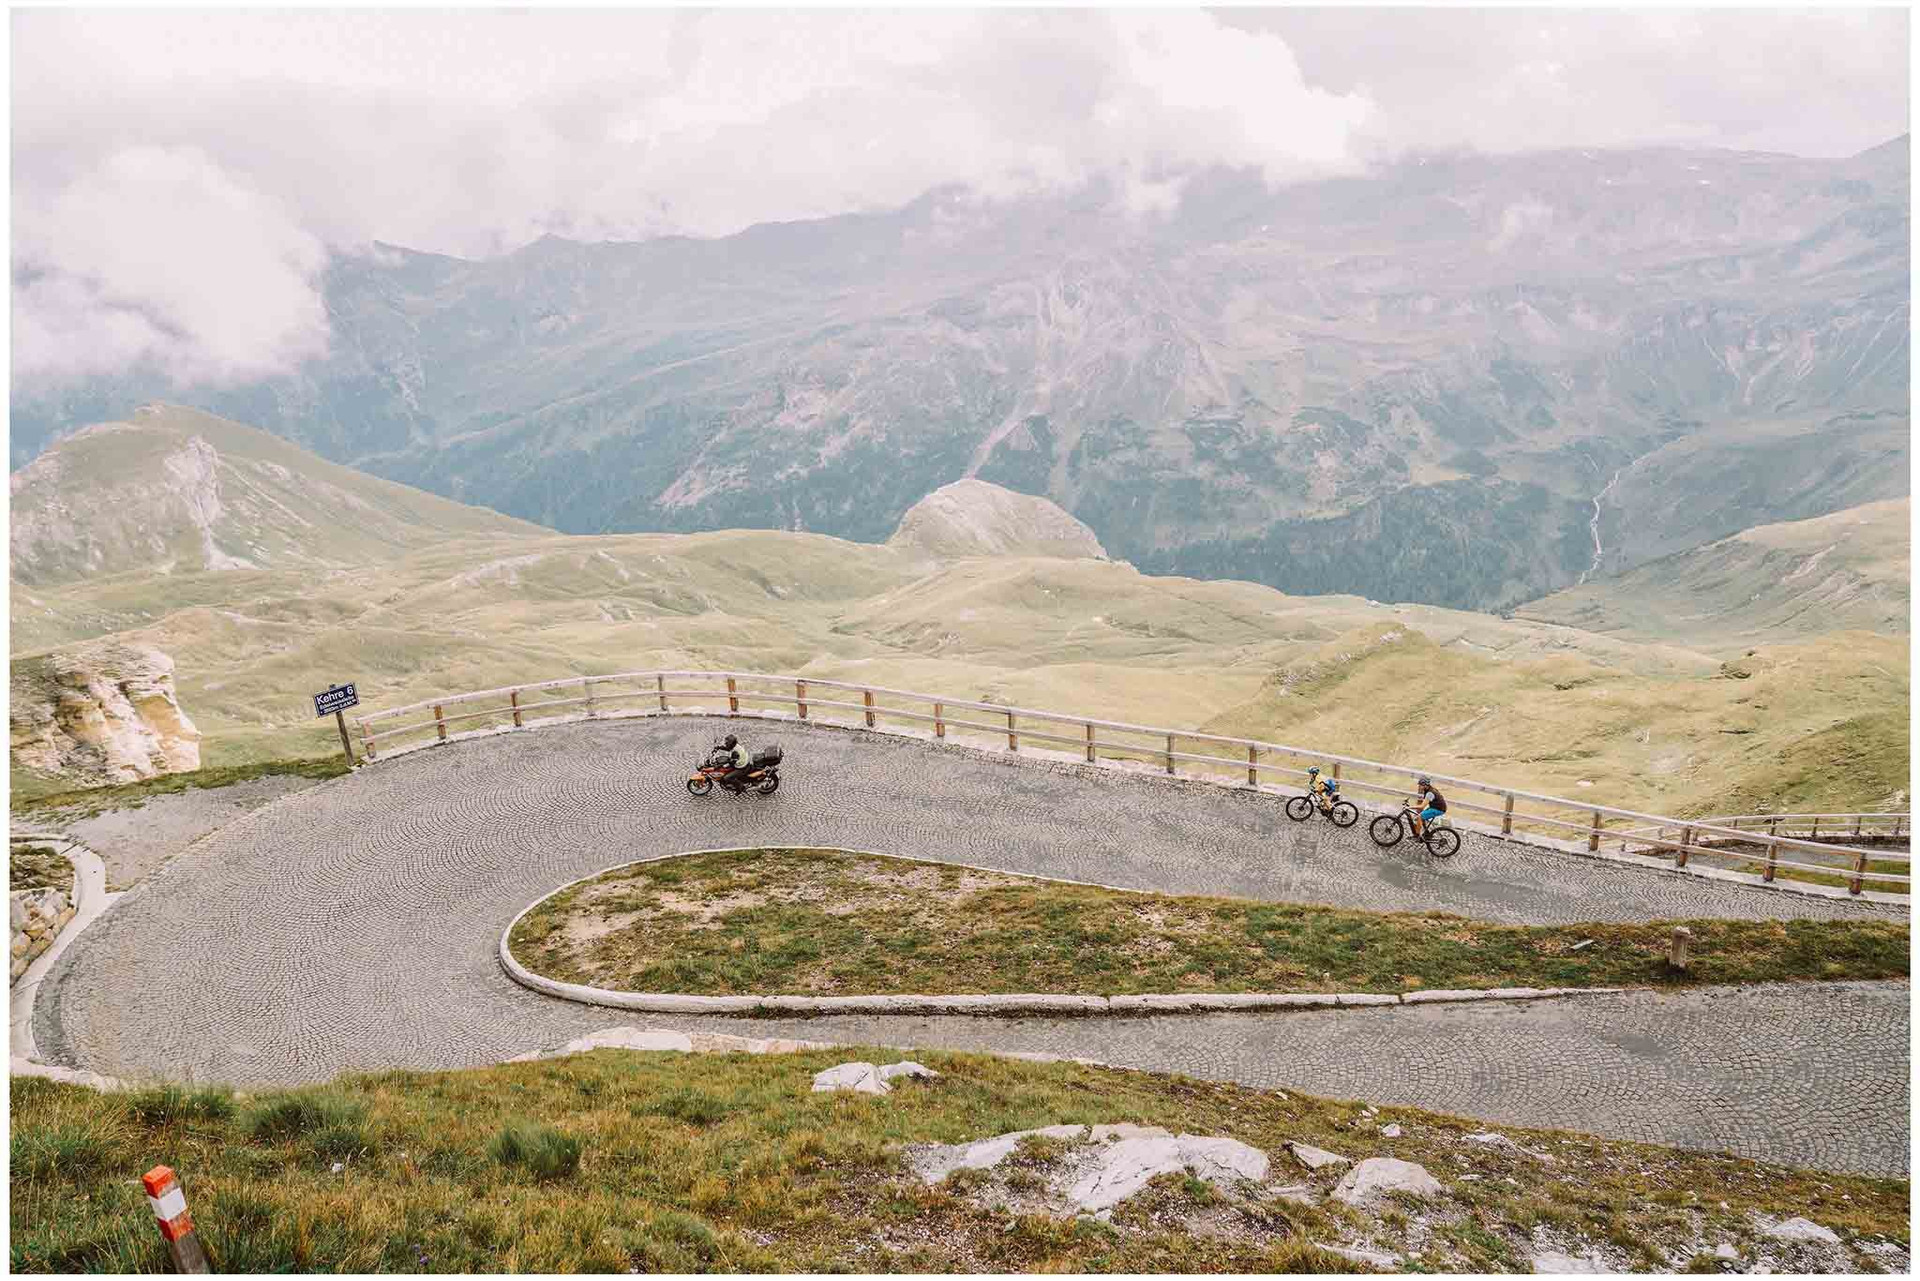 Con đường Grossglockner High Alpine Áo mở cửa cho hoạt động giao thông sau khi mùa đông kết thúc, thường sẽ vào cuối tháng 4 và đầu tháng 5